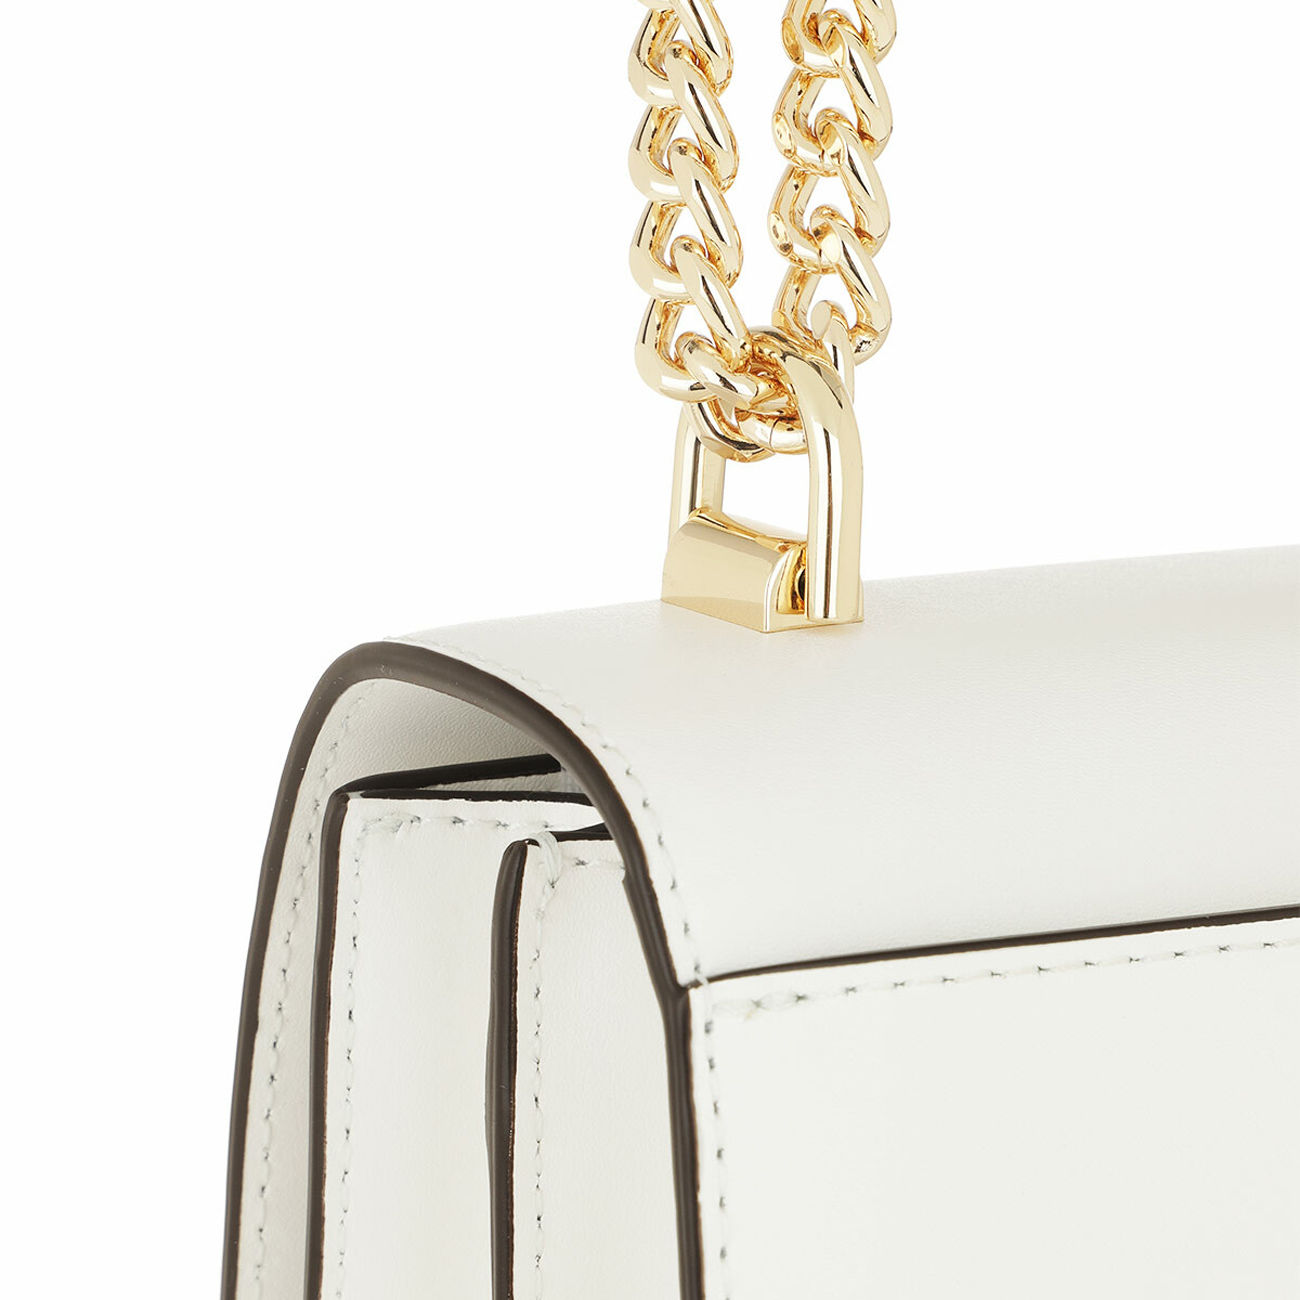 Michael Kors Jade chain shoulder bag - ShopStyle